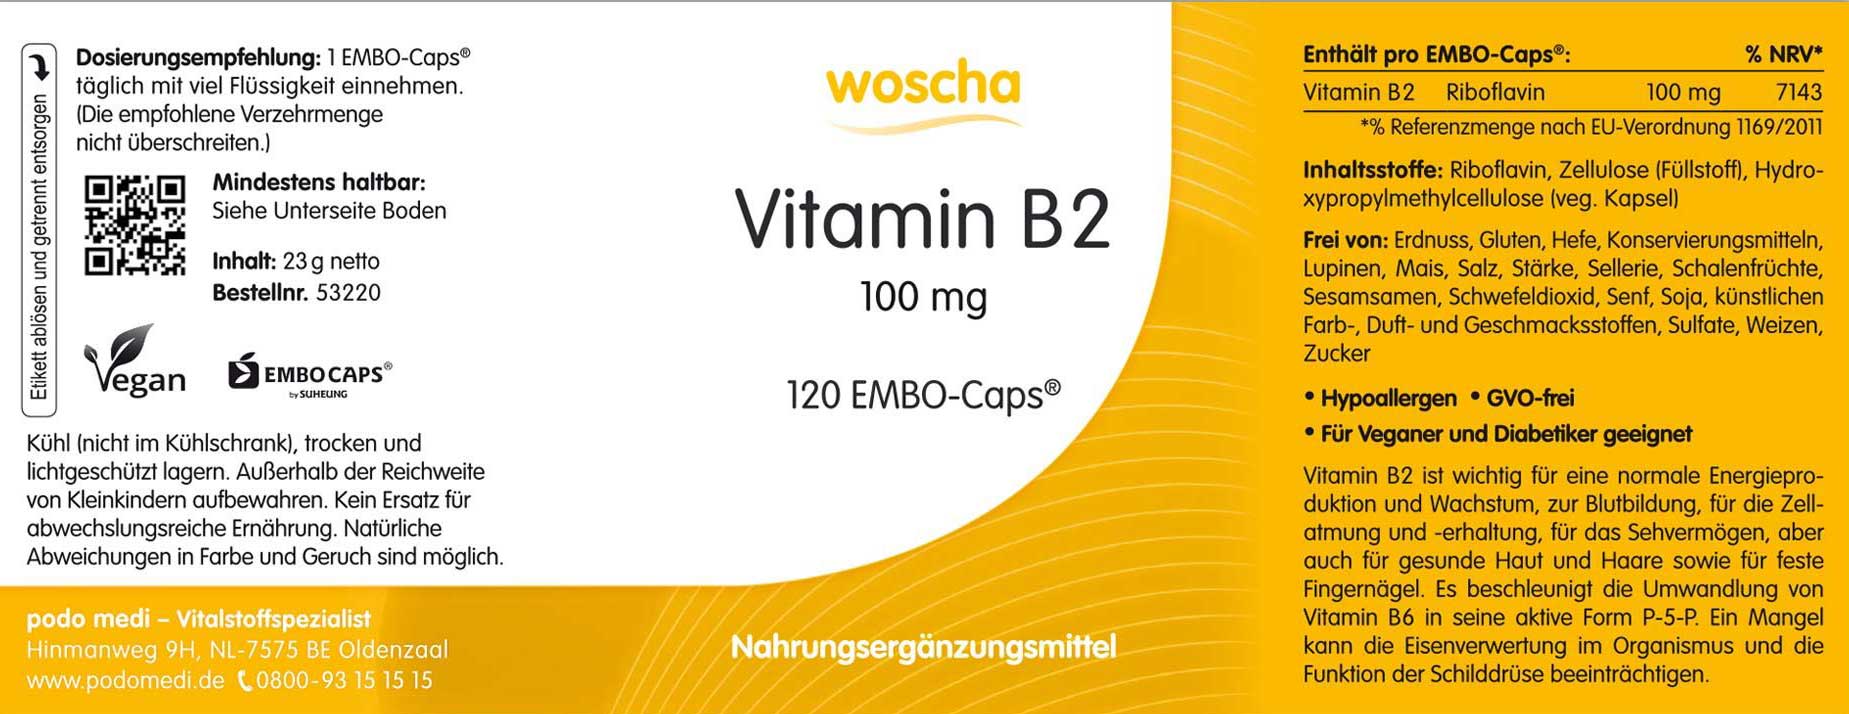 Woscha Vitamin B2 von podo medi beinhaltet 120 Kapseln Etikett